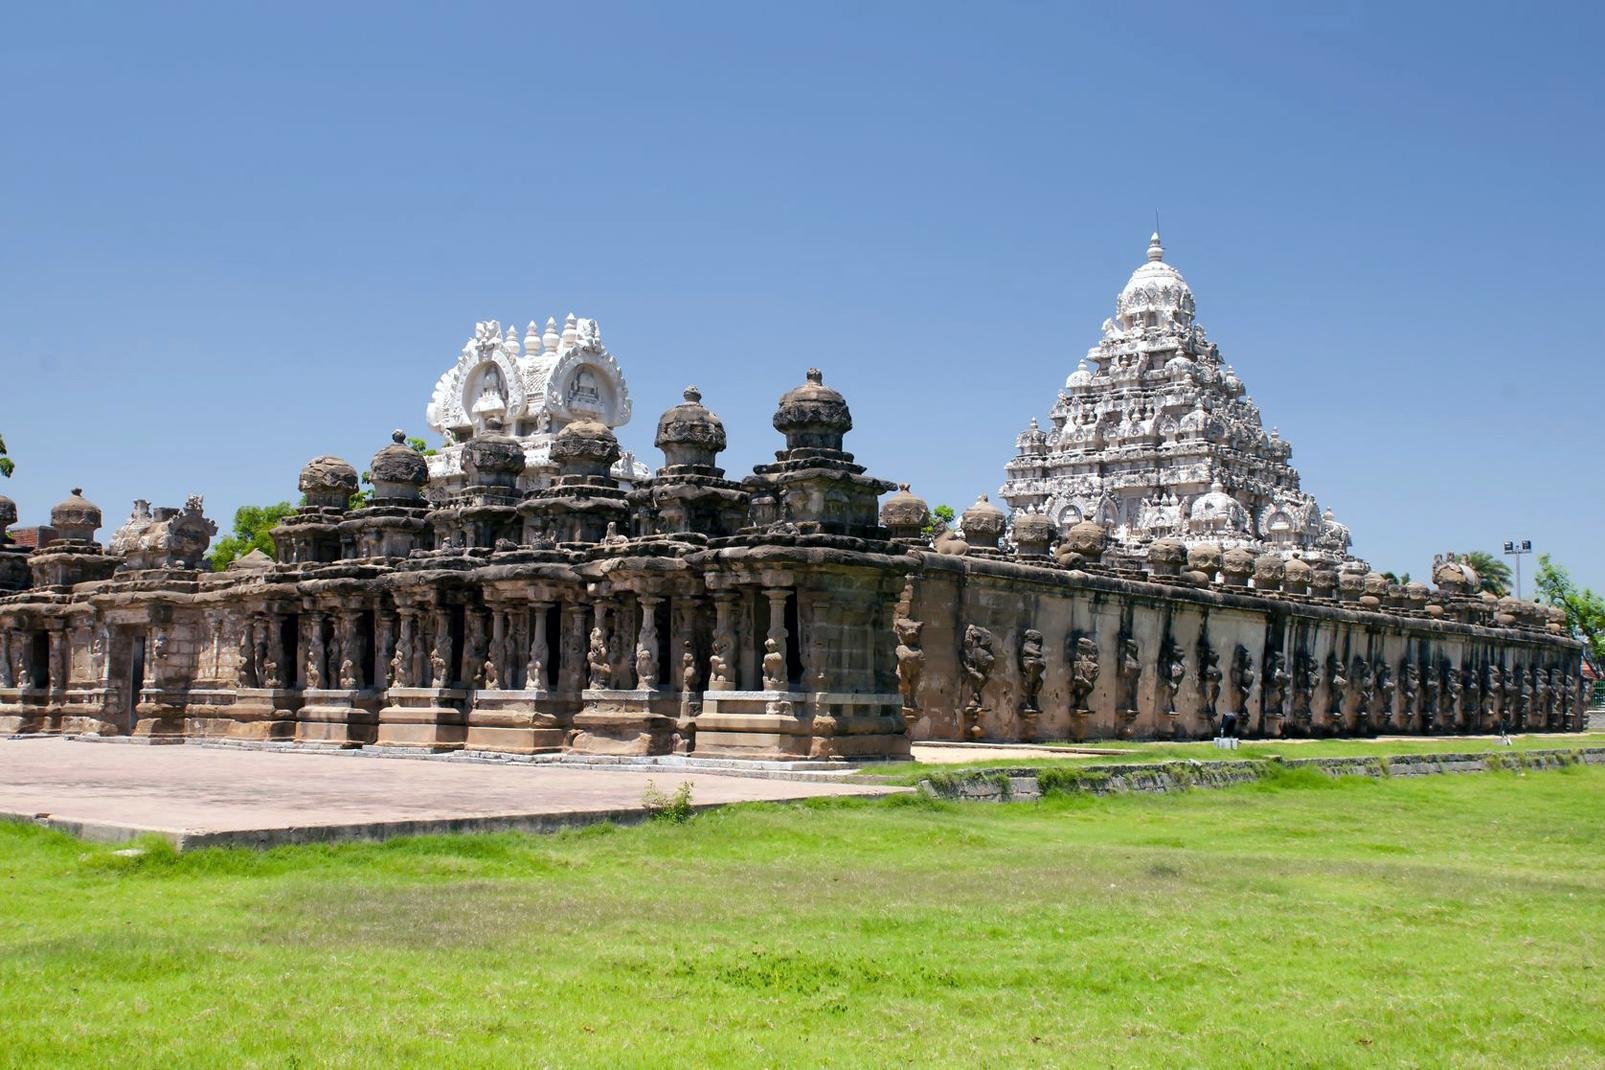 Kanchipuram, die ?Goldene Stadt?, ist eine der sieben heiligen Städte Indiens. Von weitem erblickt man schon seine zahlreichen Gopurams, die von der Fülle der hinduistischen Tempel zeugen. Am Rande der Stadt befindet sich der Kailashanatha-Tempel, der Ende des 7. Jahrhunderts erbaut wurde, sich heute noch in einem sehr guten Zustand befindet und ein Meisterwerk dravidischer Architektur ist. Im Gegensatz ...